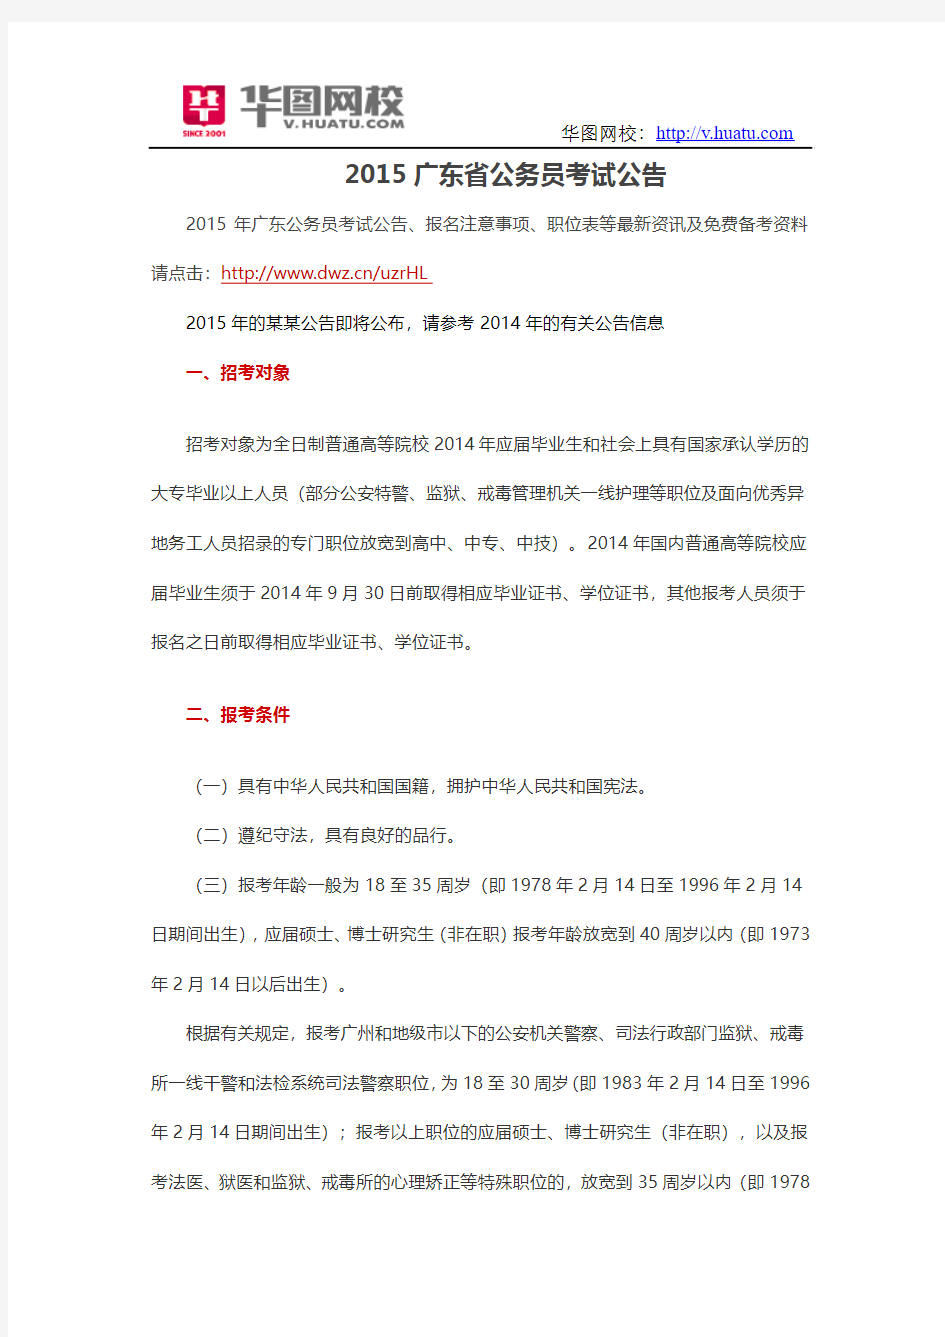 2015广东省公务员考试公告